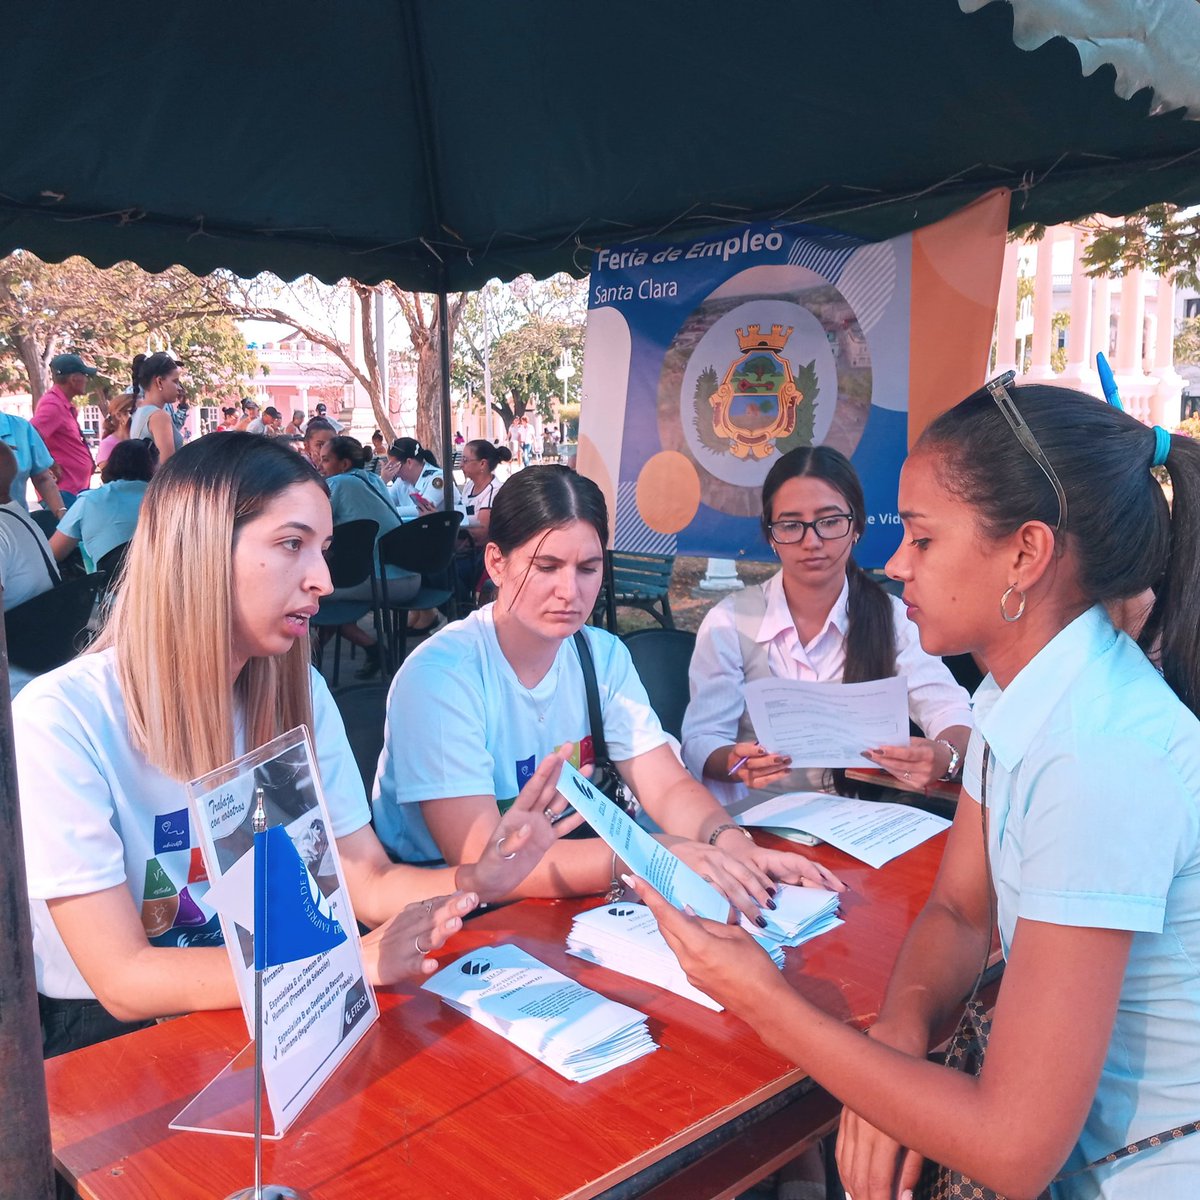 Feria de Empleo en #SantaClara @ETECSA_Cuba participa ofertando las siguientes plazas 👉Especialista de Recursos Humanos (Selección de Personal) 👉Especialista de Recursos Humanos (Seguridad y Salud en el Trabajo) 👉Dependiente de Almacén